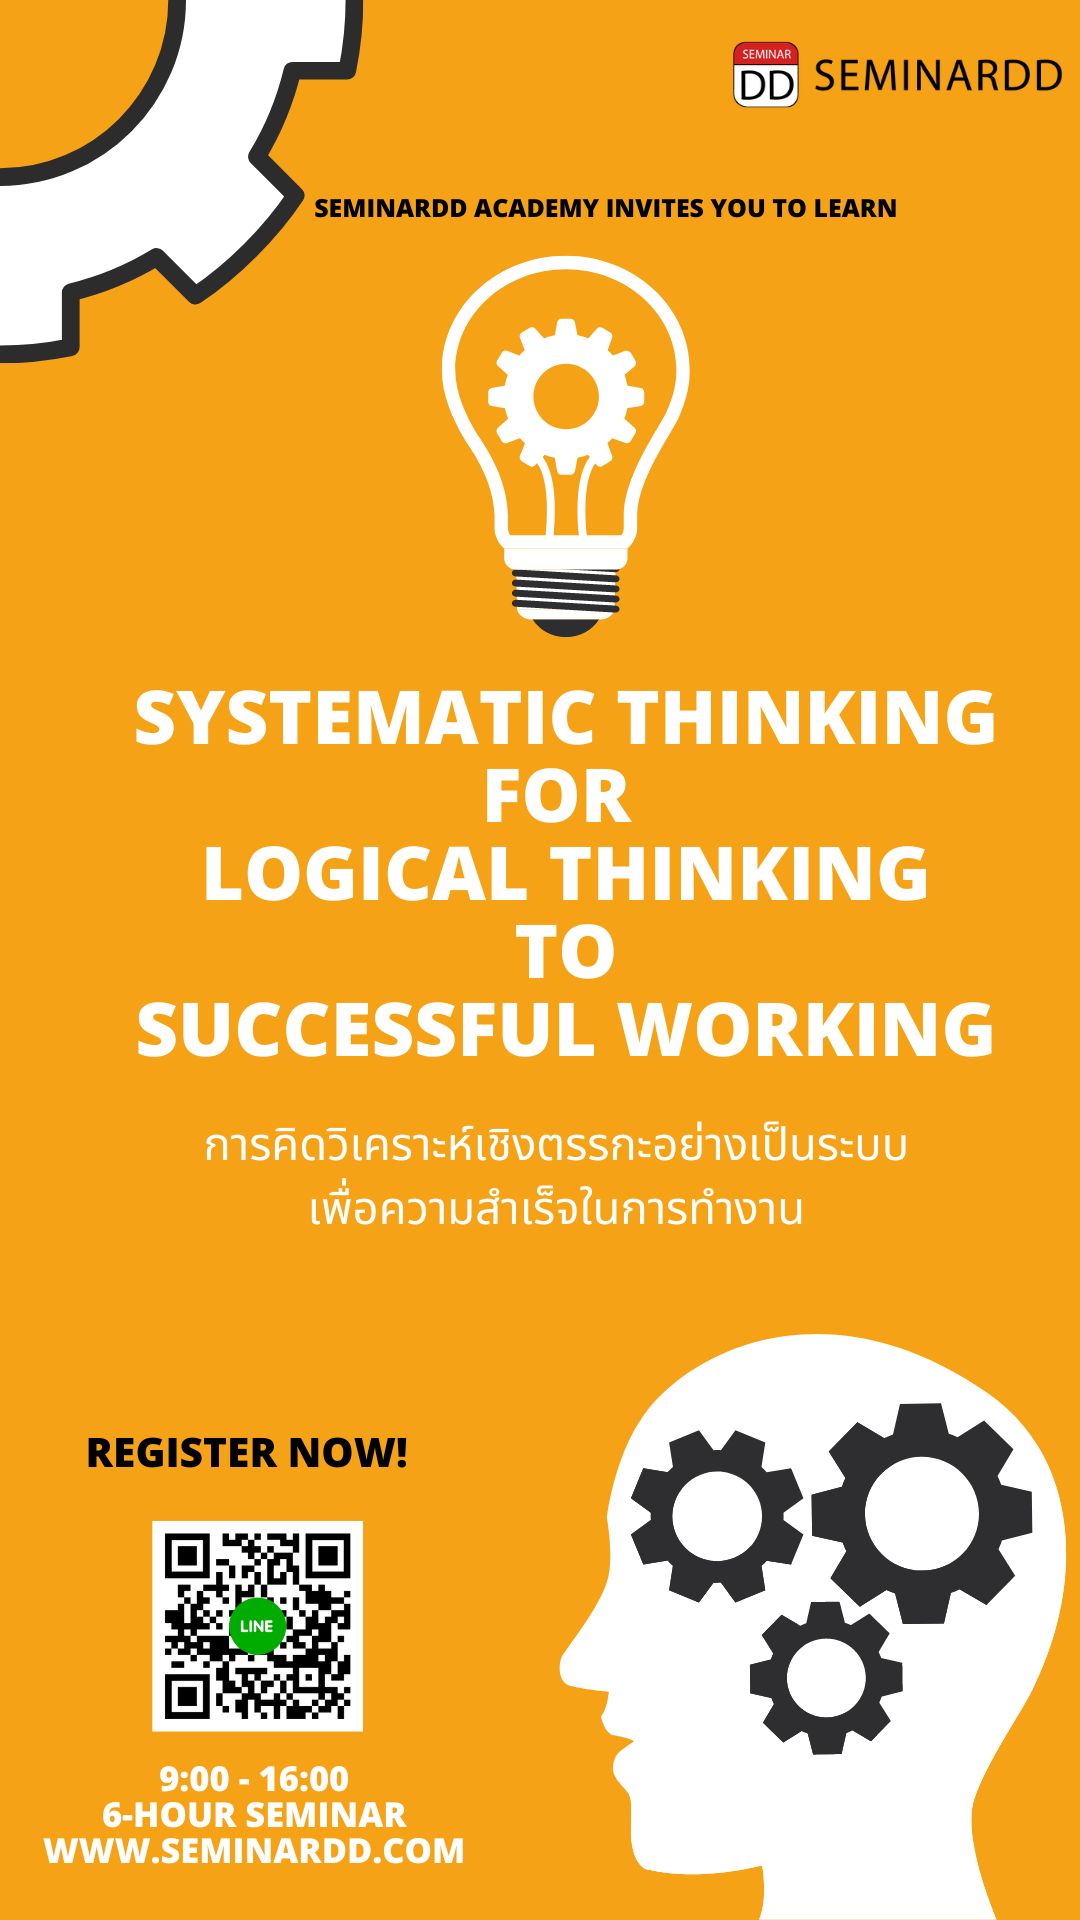 หลักสูตร การคิดวิเคราะห์เชิงตรรกะอย่างเป็นระบบเพื่อความสำเร็จในการทำงาน ( Systematic Thinking for Logical  Thinking to Successful Working ) อบรมในรูปแบบ Classroom